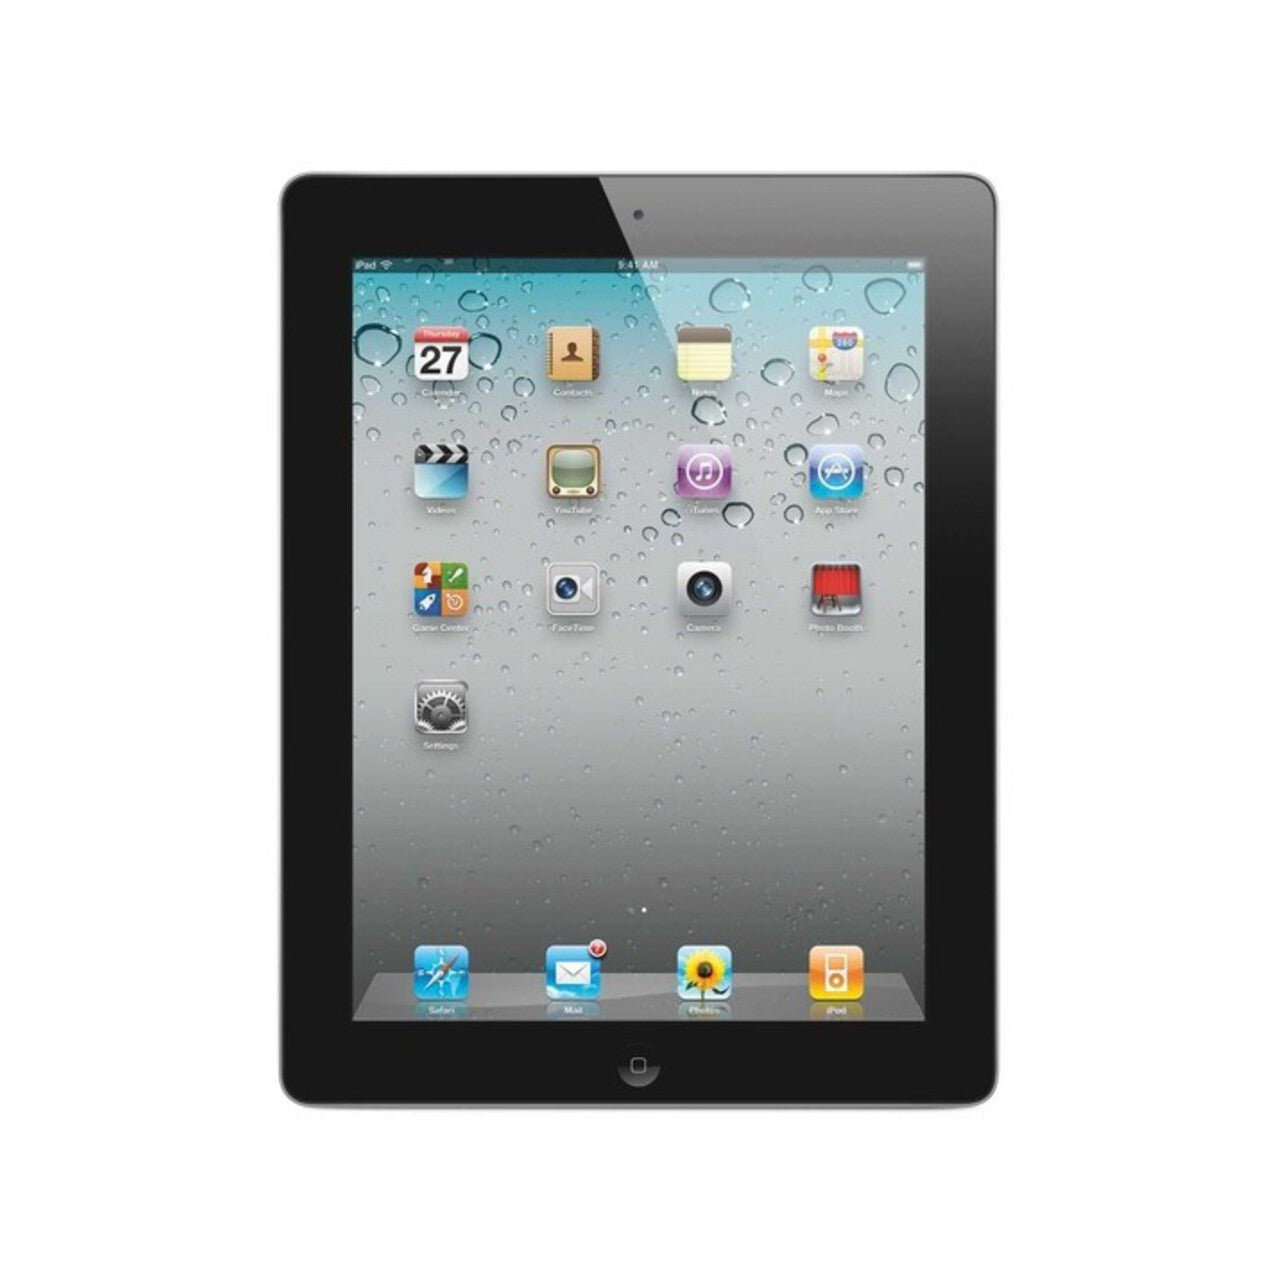 Apple iPad 4th Generation 9.7", MD510LL/A, Wi-Fi, 16GB, Black - Refurbished Good